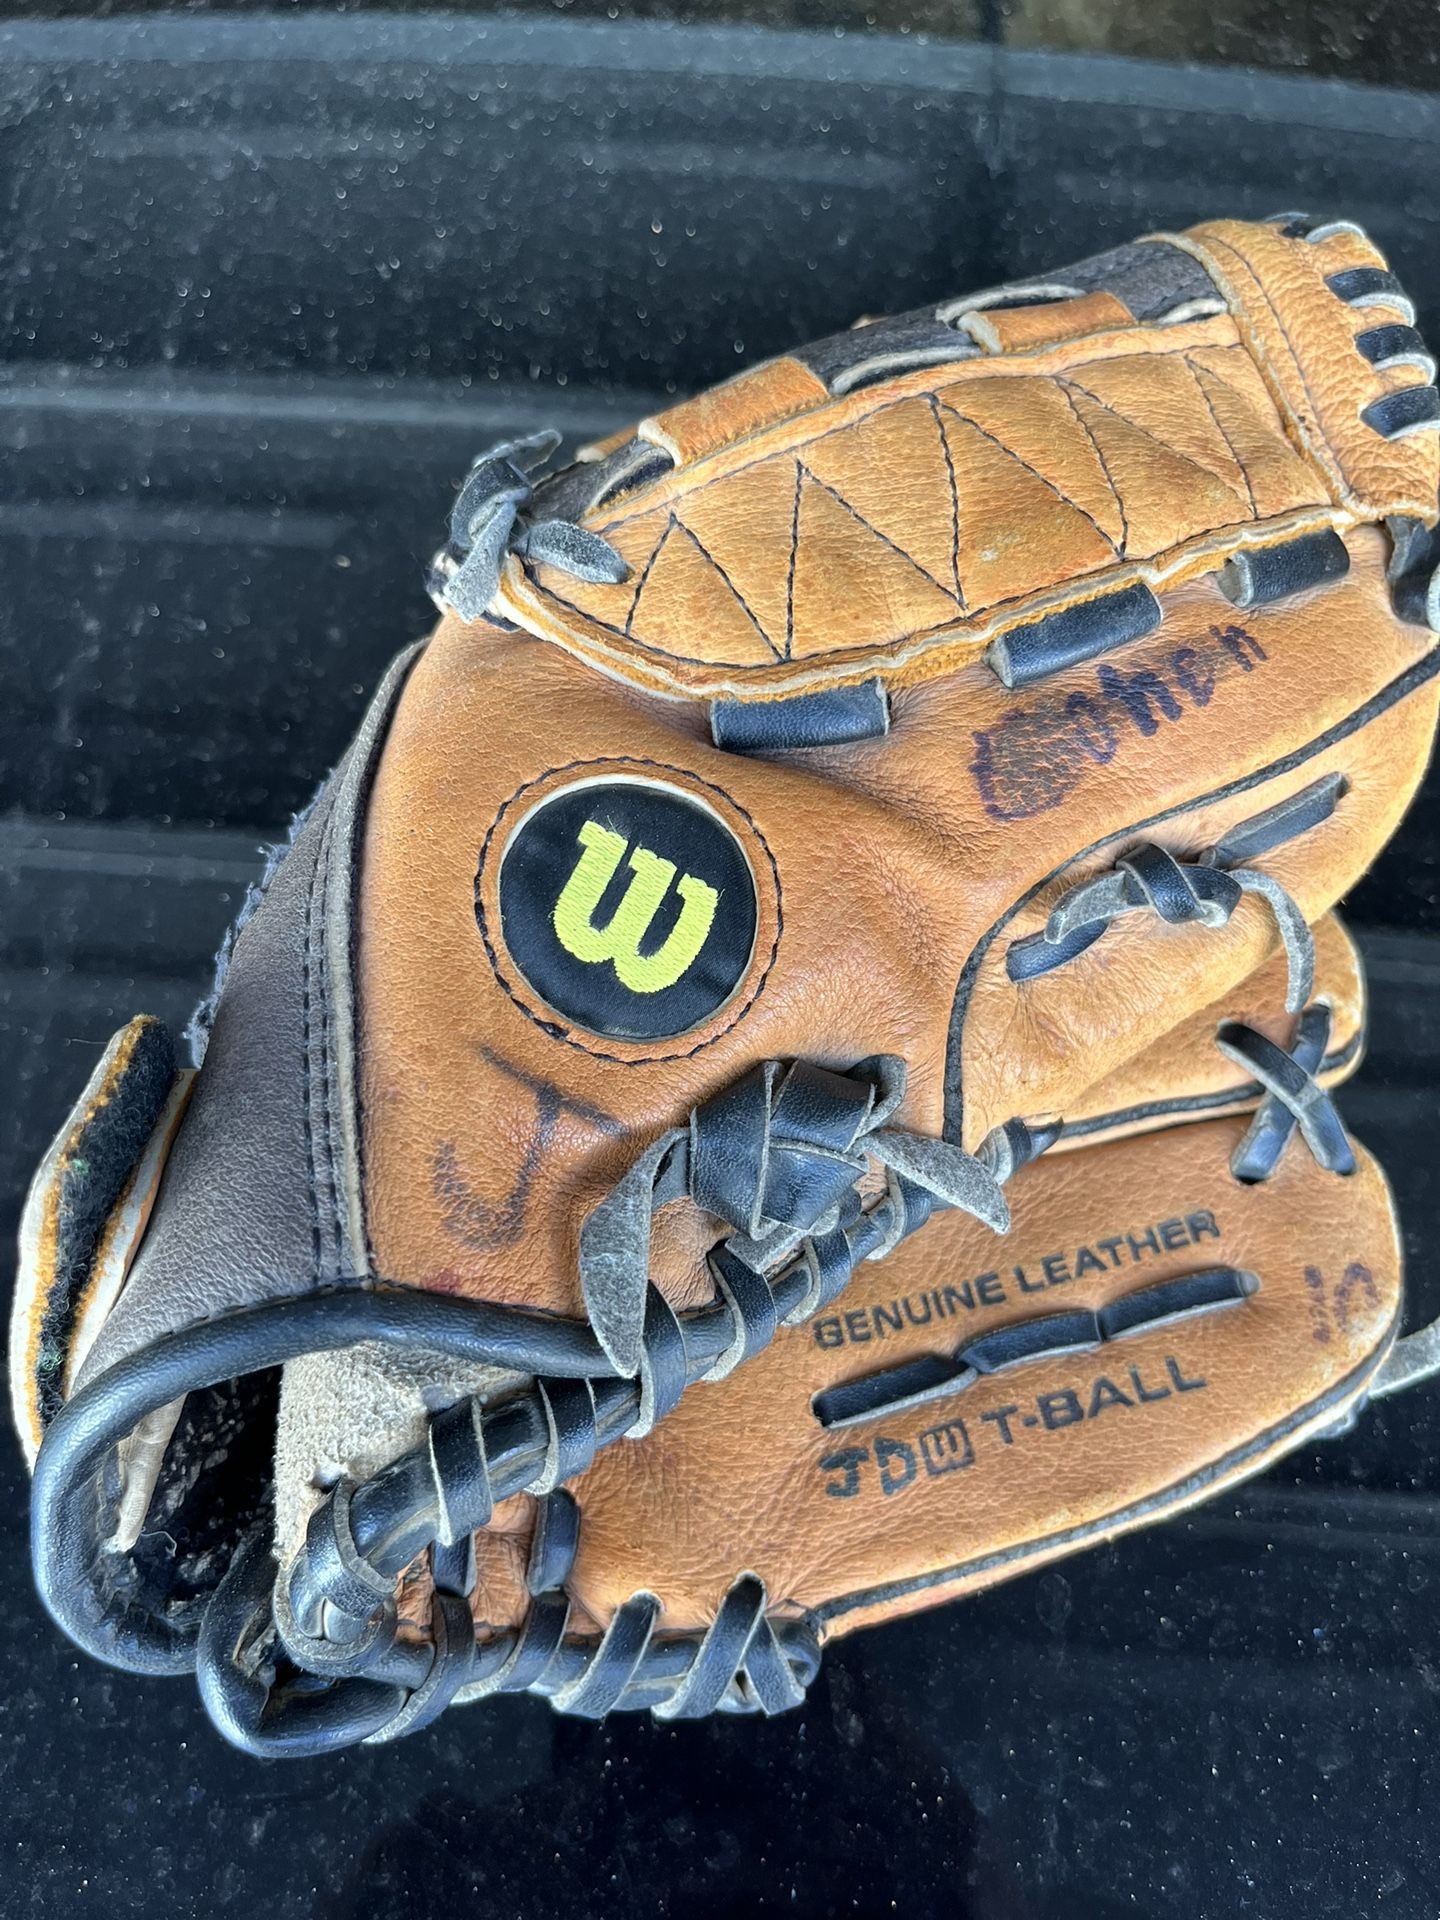 Wilson Youth Baseball Glove / Mitt